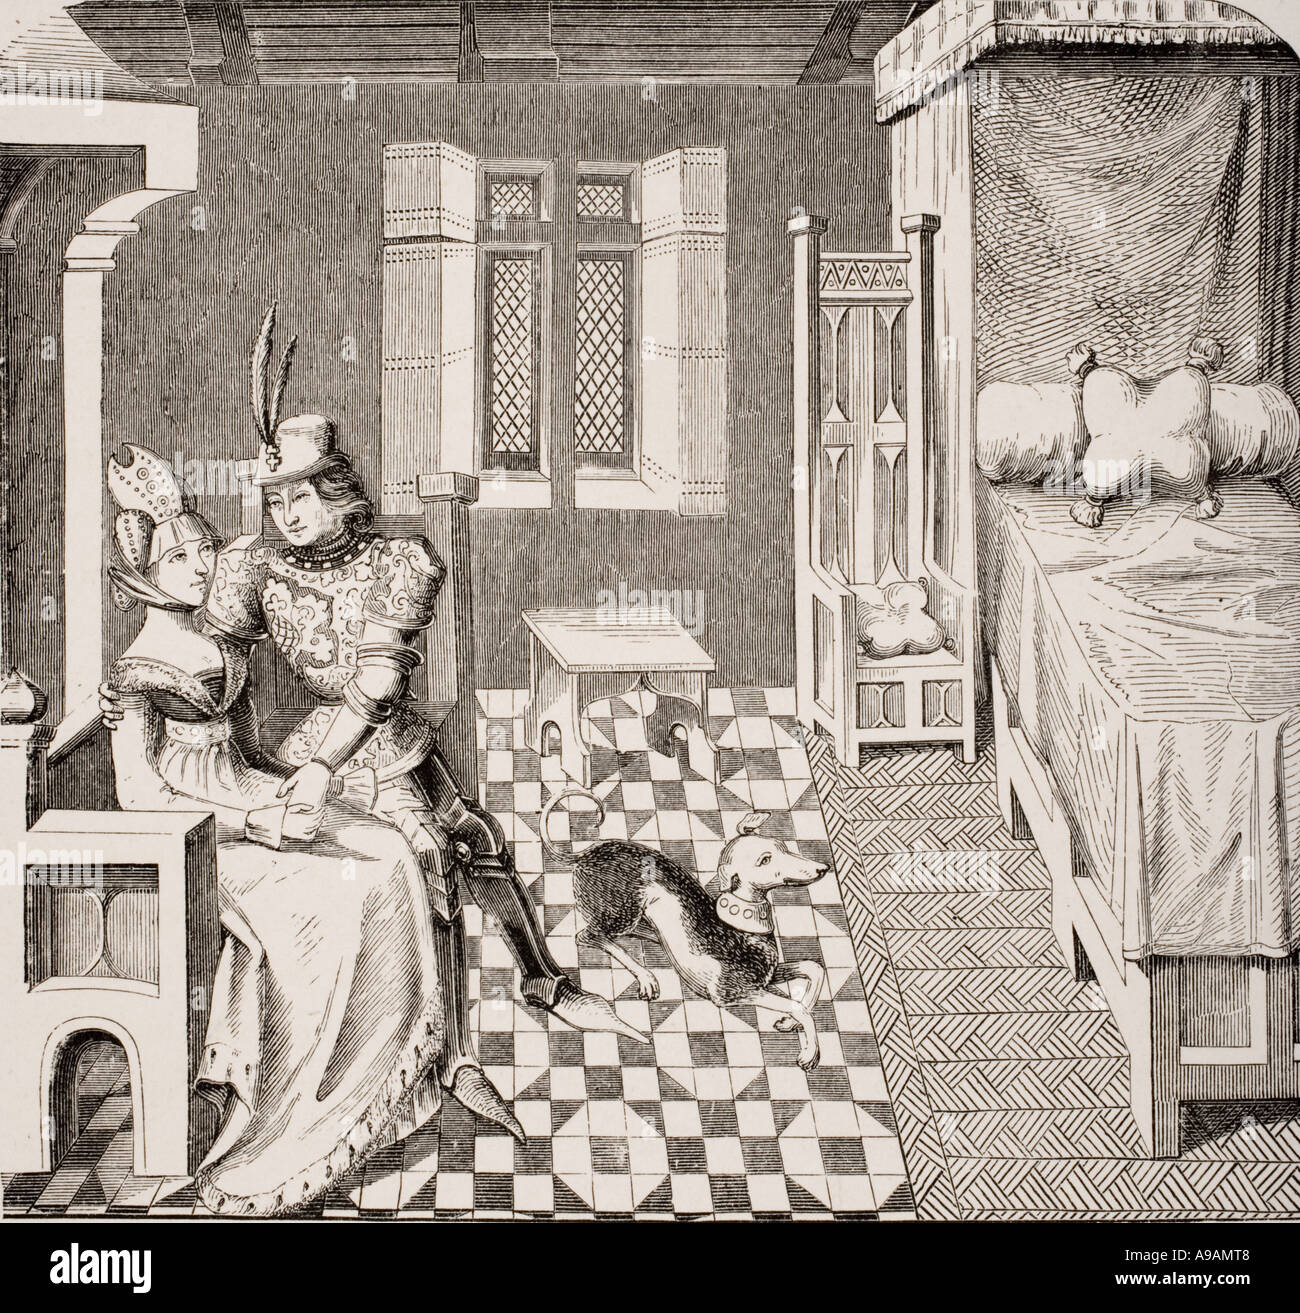 Le chevalier et la dame. Les costumes de la Cour de Bourgogne au 14e siècle Banque D'Images